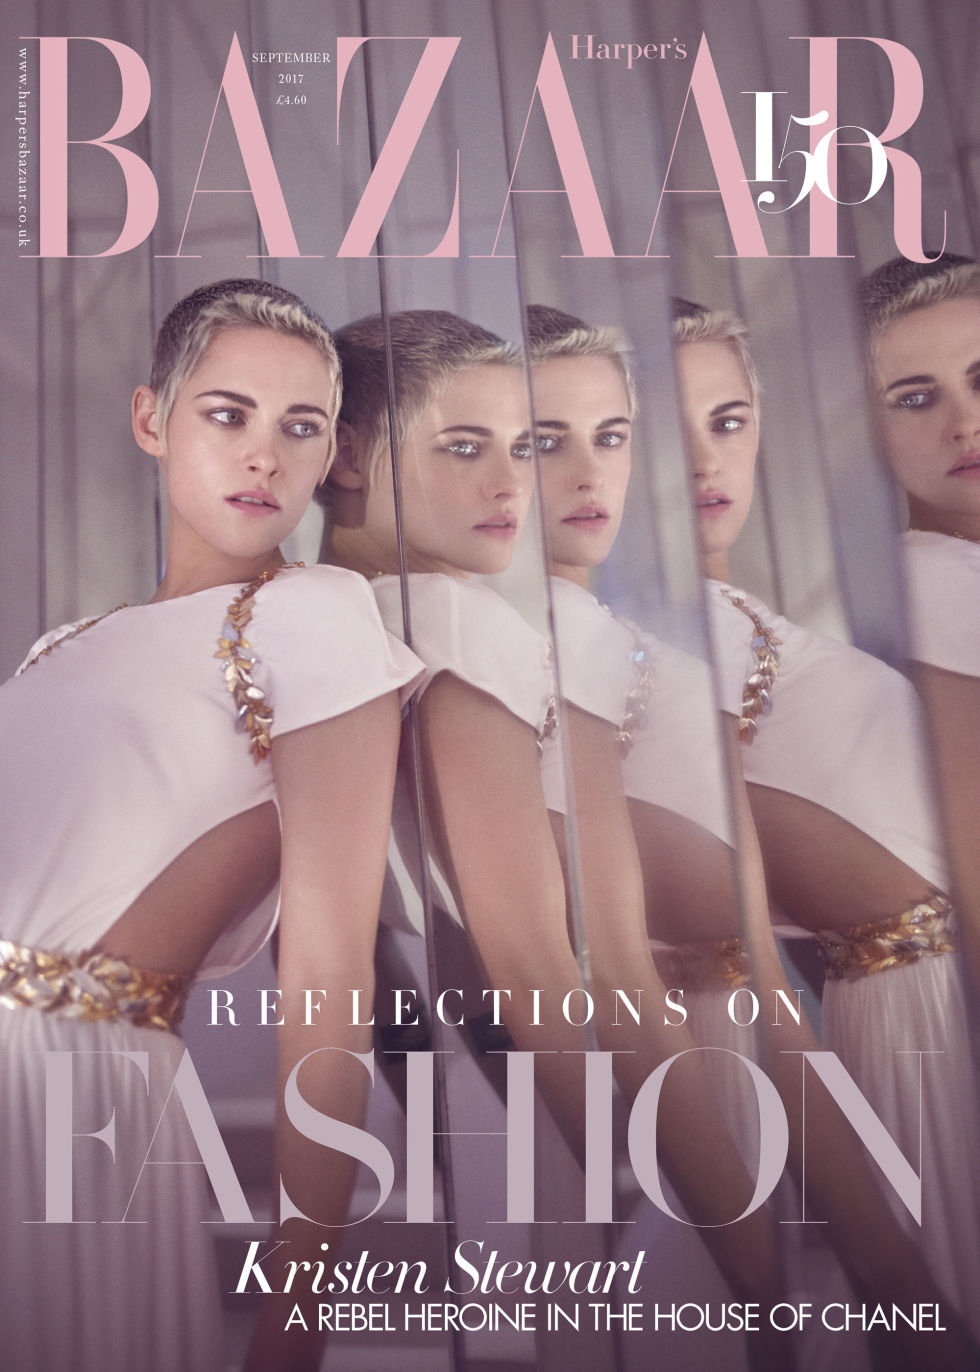 Kristen wears Chanel on the newsstand cover of 'Harper's Bazaar U.K.'